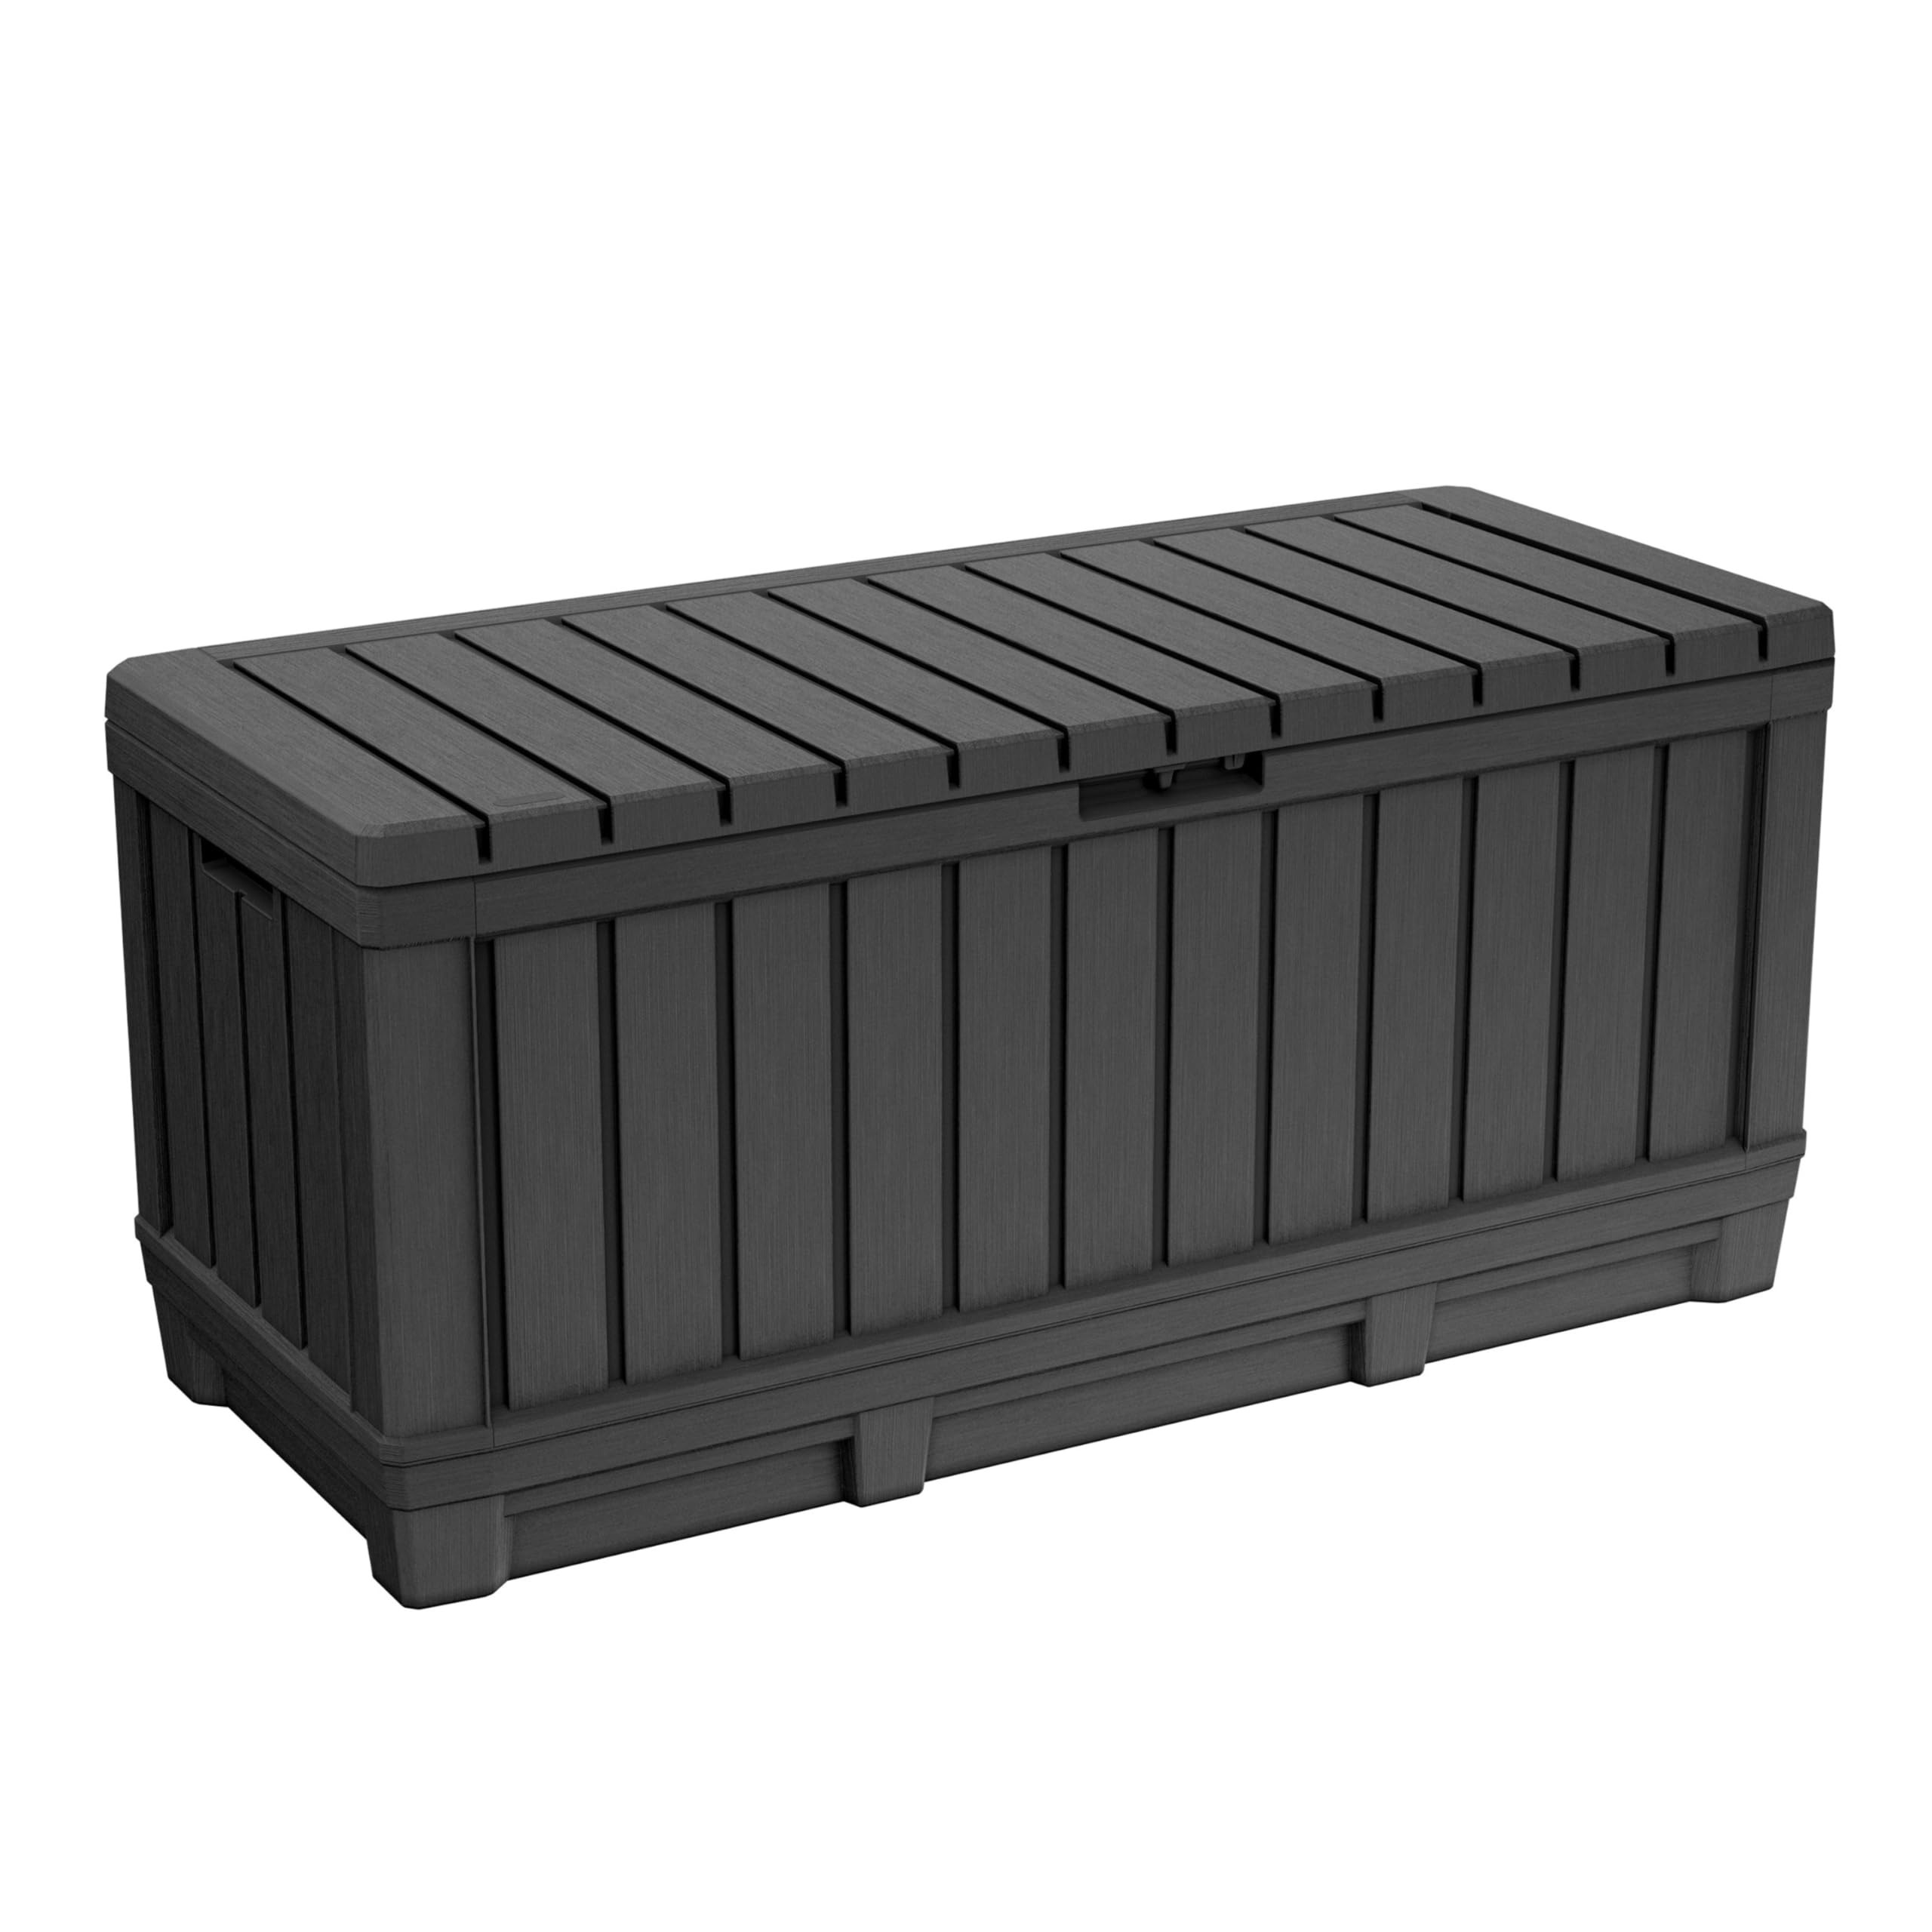 Keter Kentwood Auflagenbox mit Holzoptik, 350l Kapazität, braun, Kissenbox, 128x53.6x59cm, wetterfest